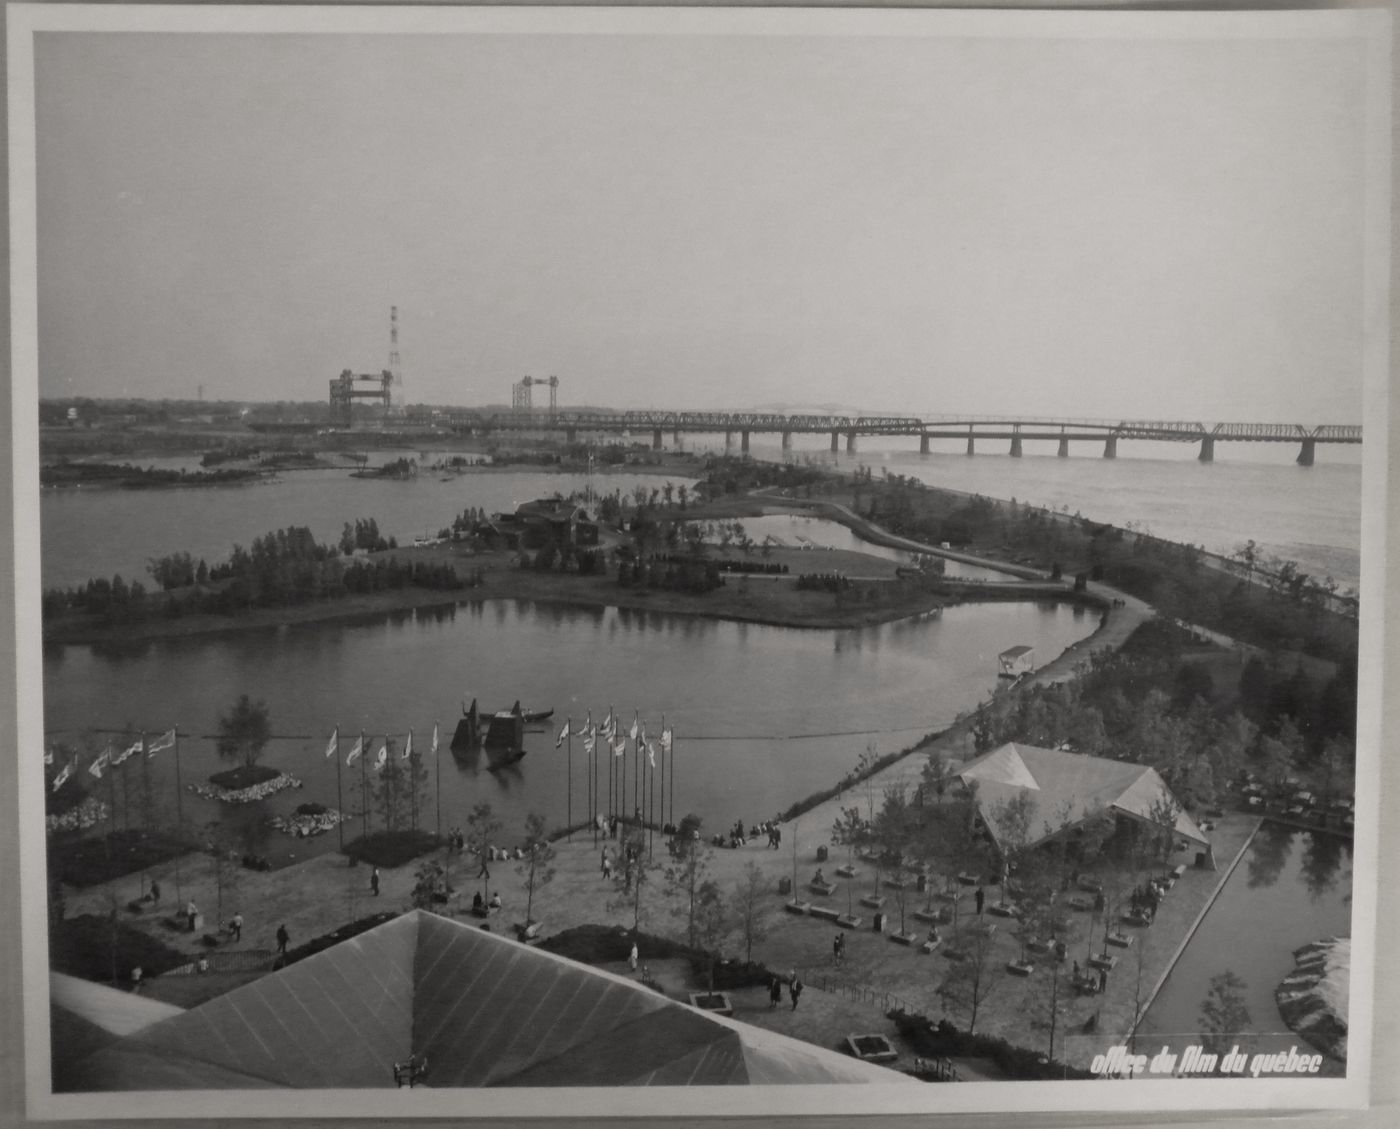 Partial view of the Regatta Lake, Expo 67, Montréal, Québec